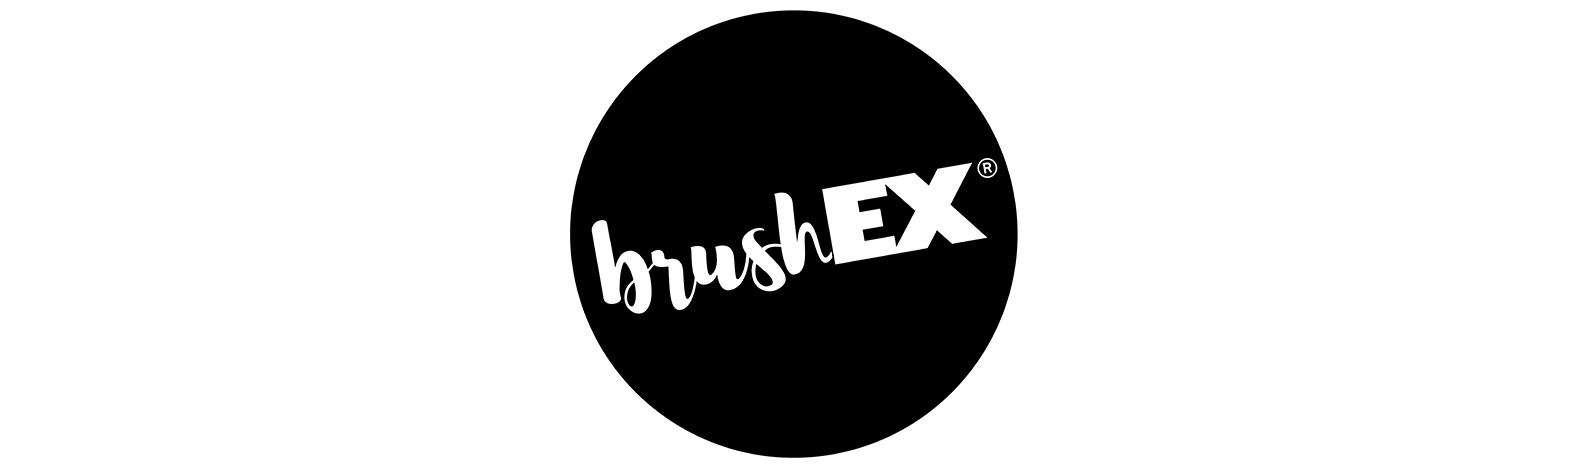 brushex